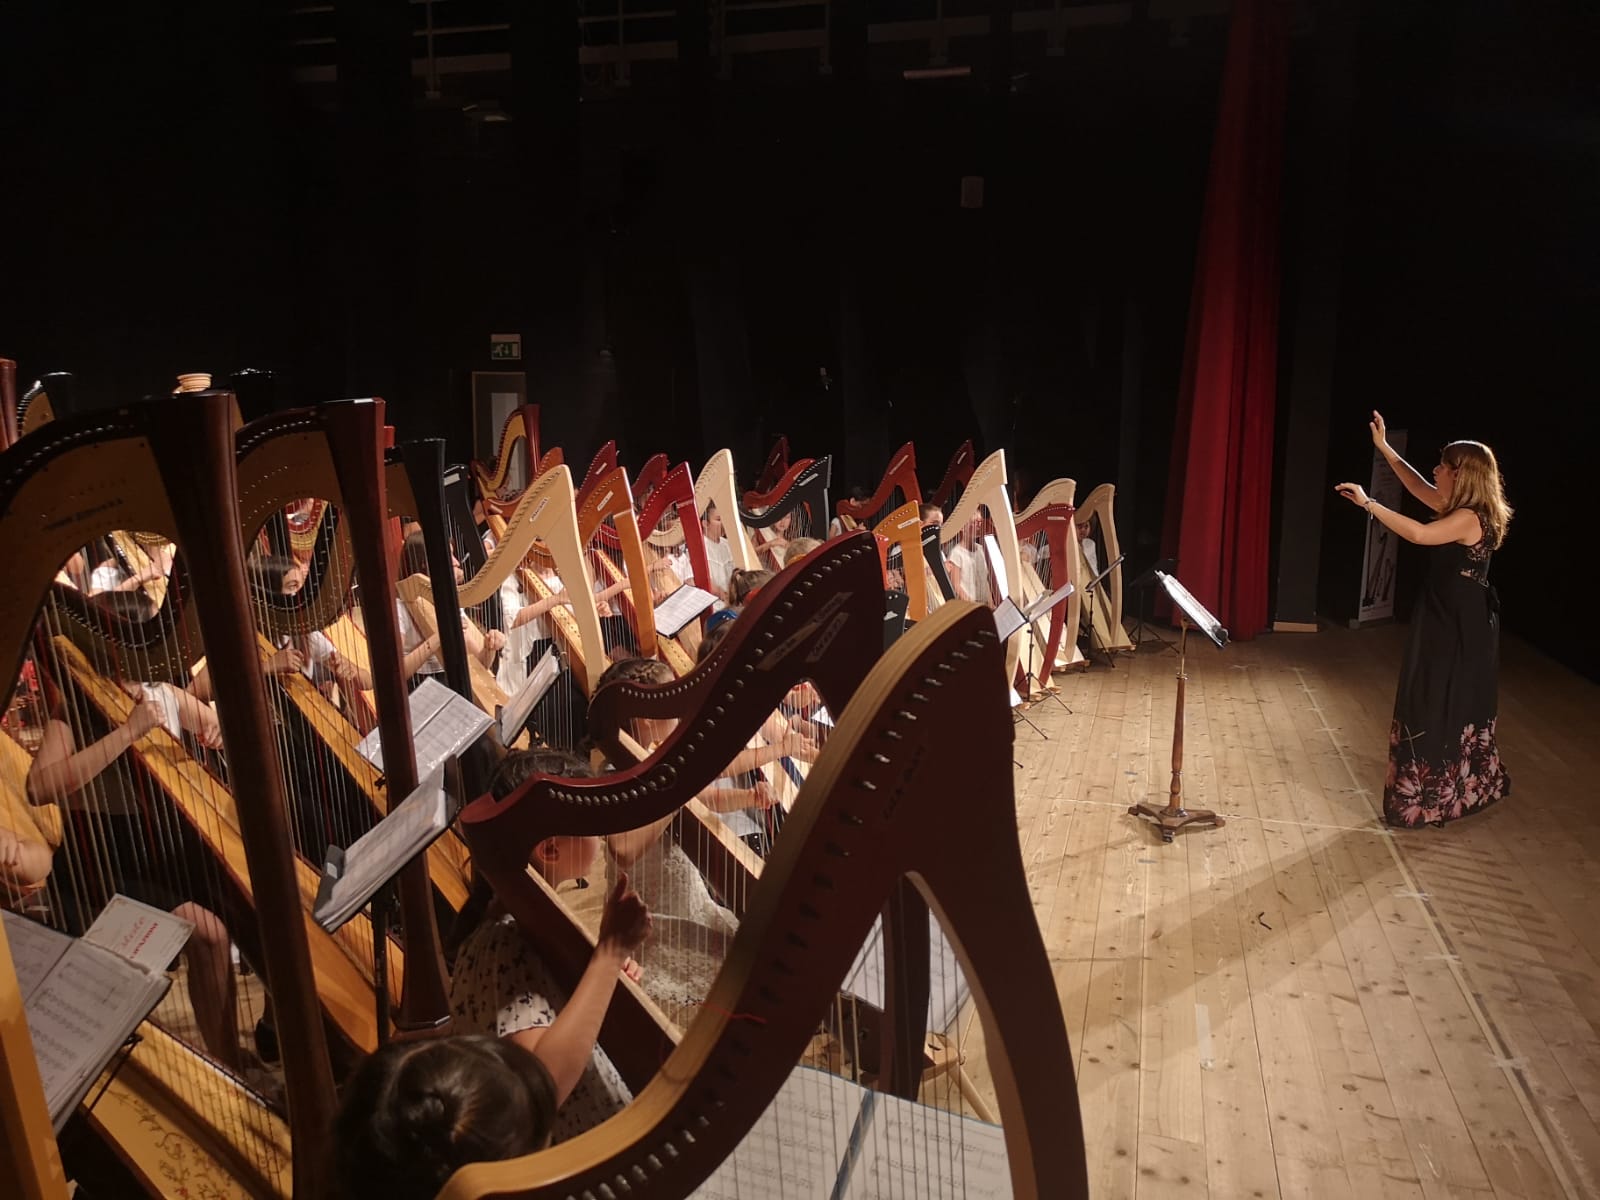 Arpa - European Suzuki harp ensemble